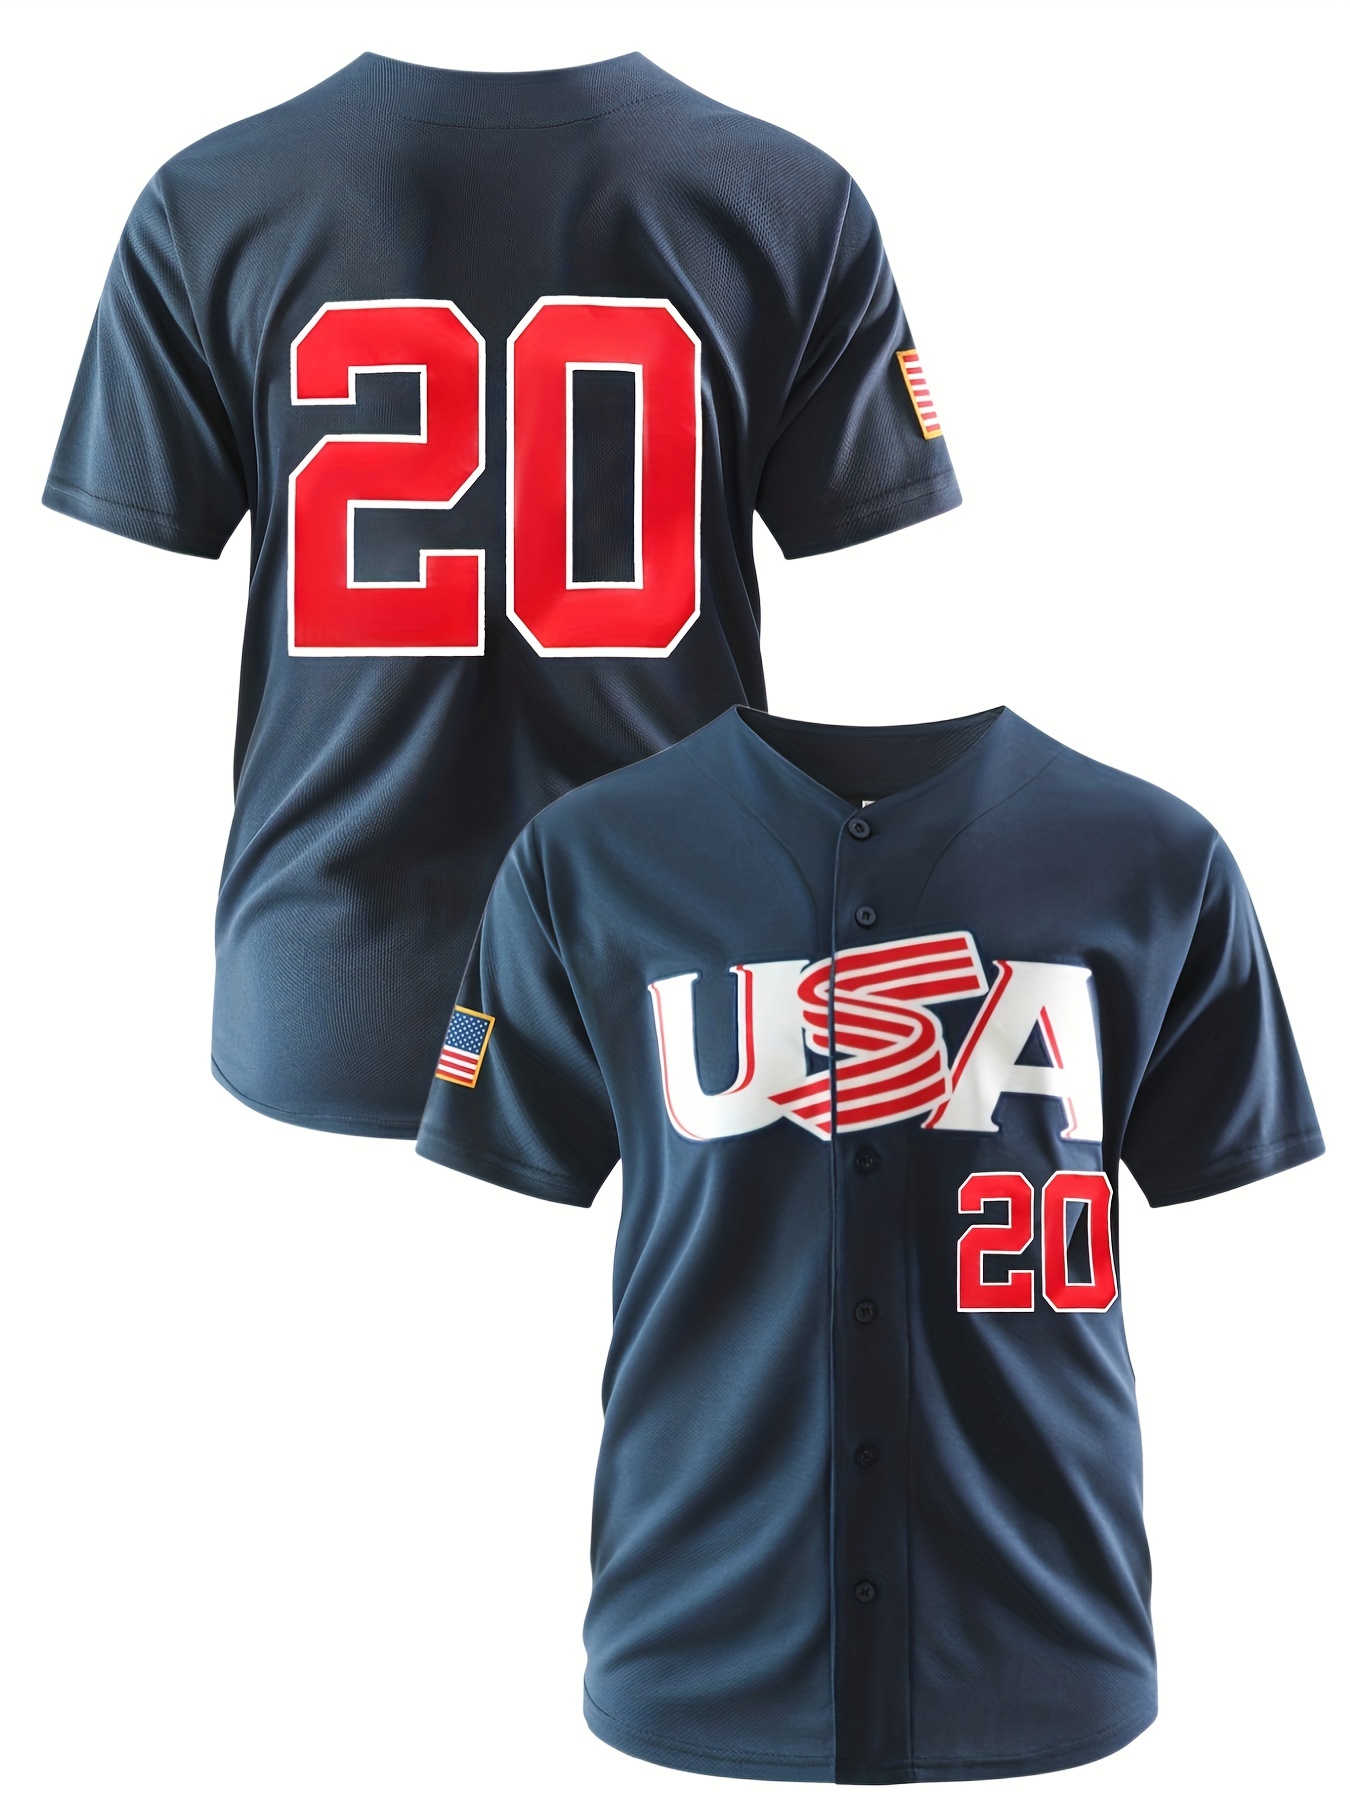 Number 27 Football Baseball Soccer Jersey Uniform T Shirt